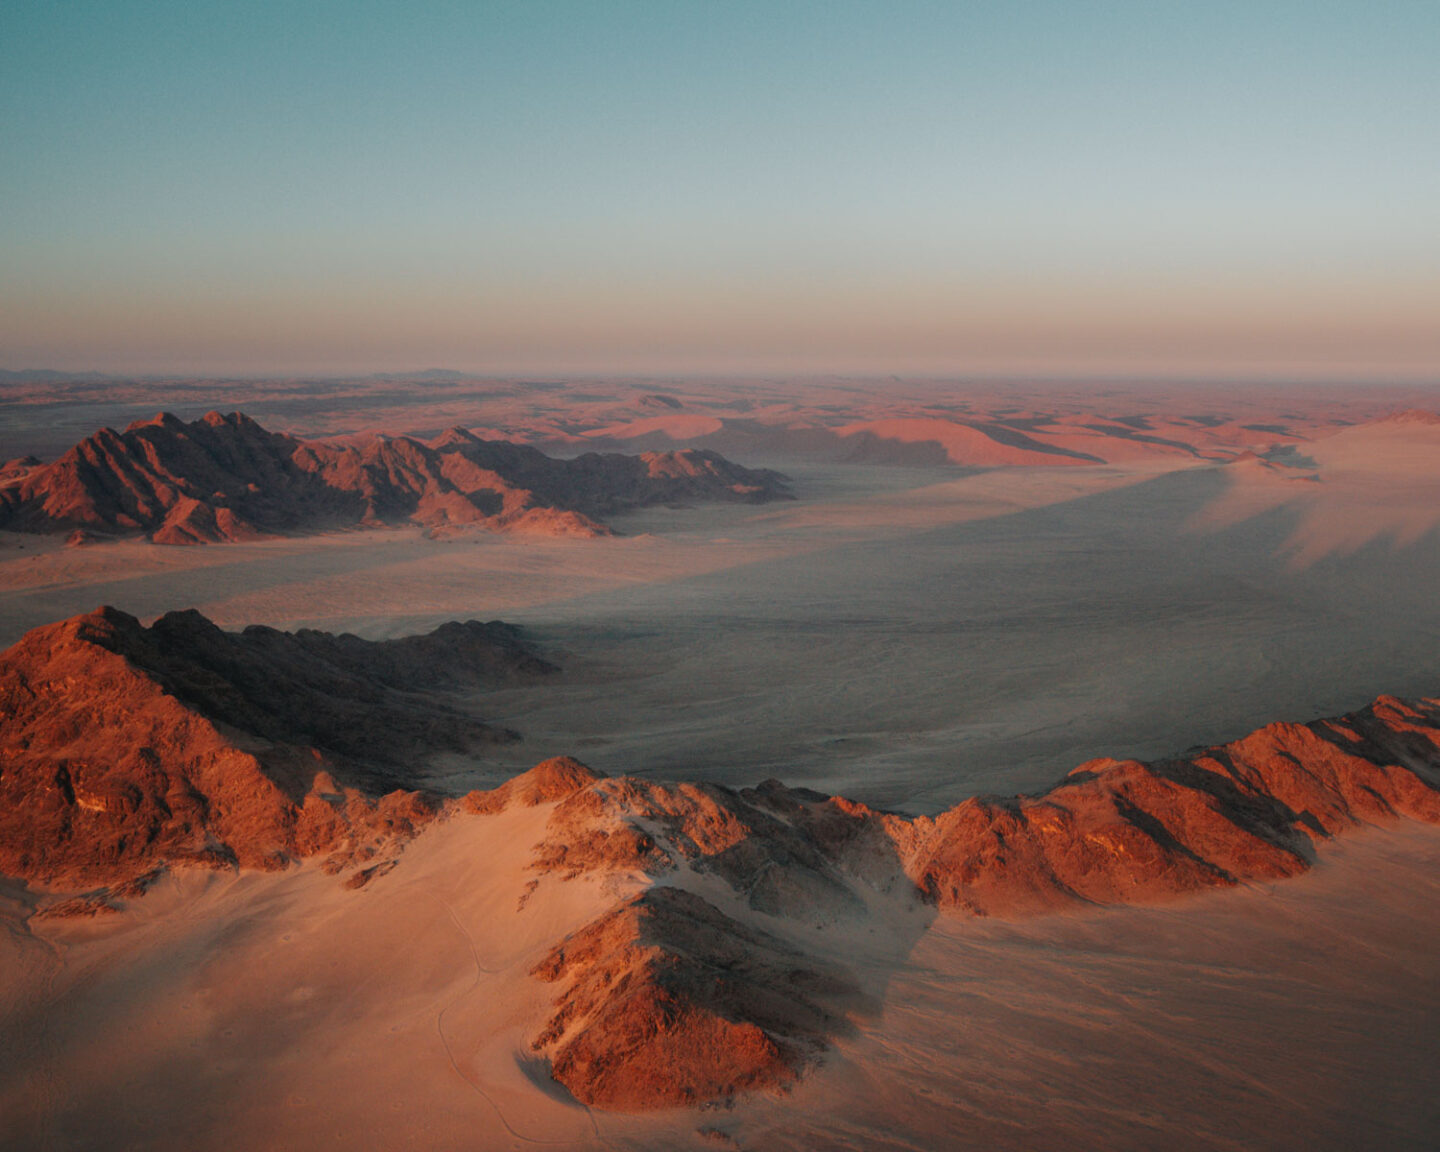 desert landscapes in namibia